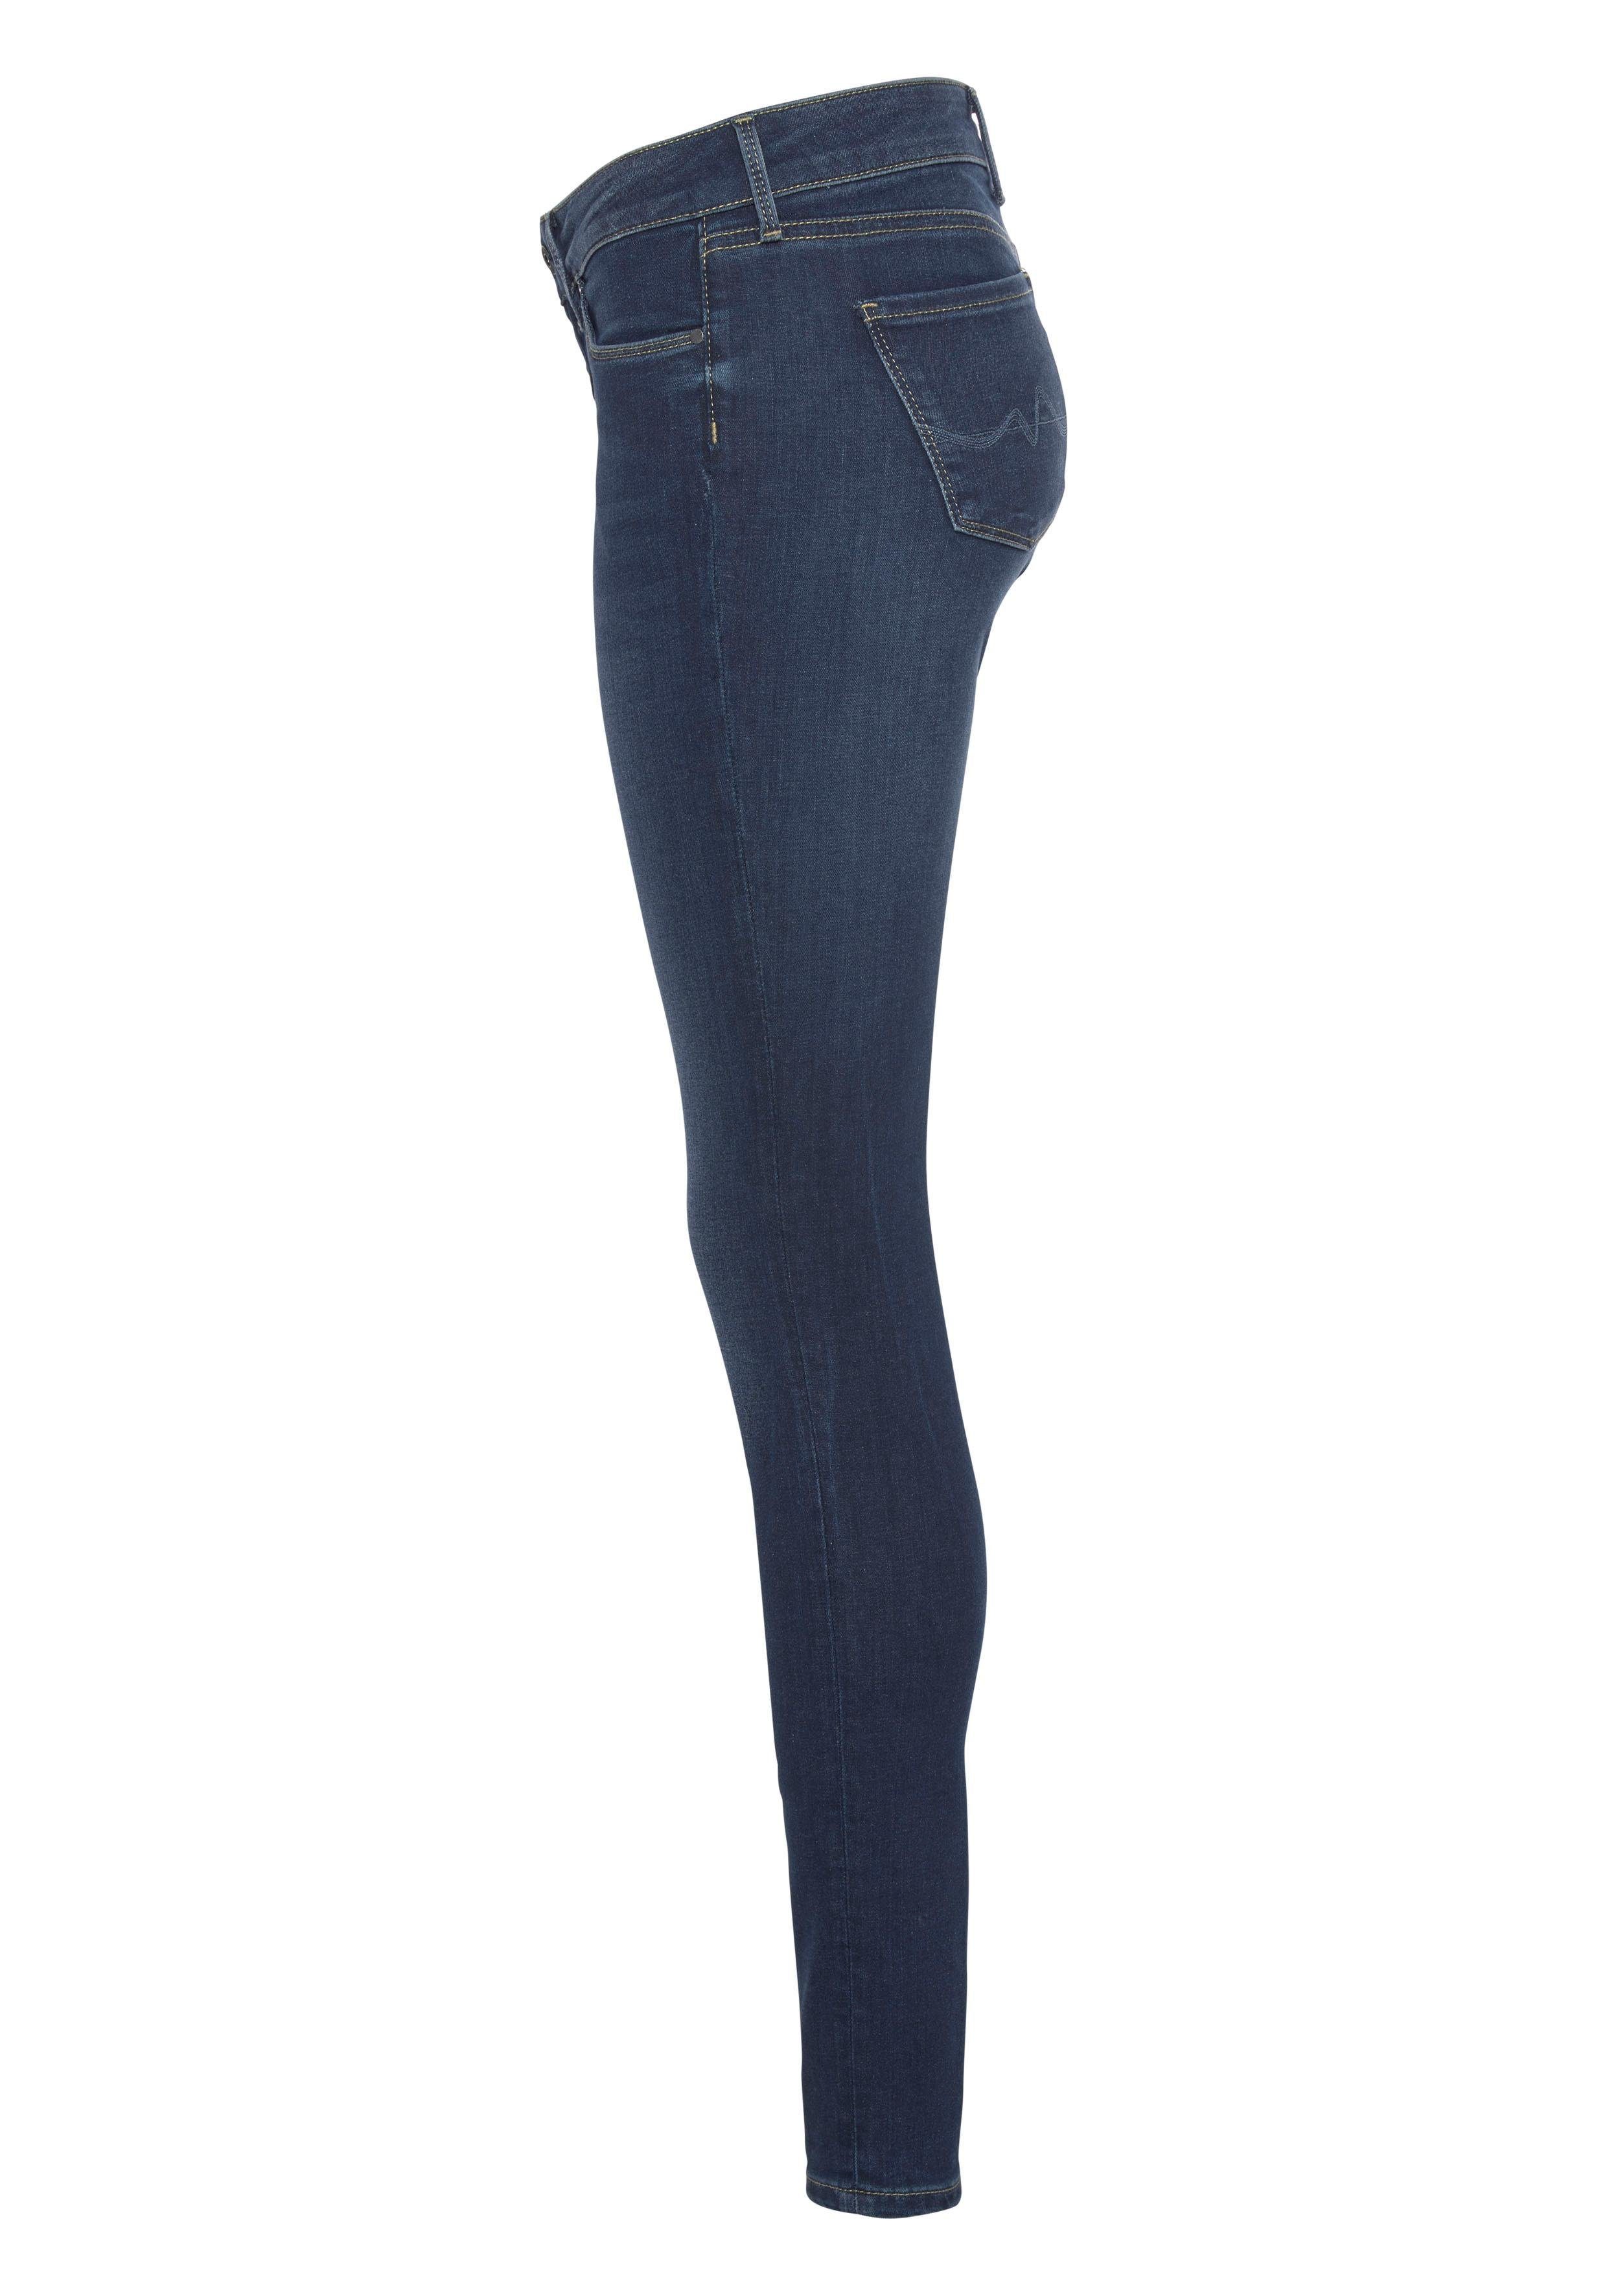 1-Knopf H45 Bund mit Skinny-fit-Jeans SOHO im und dark Pepe 5-Pocket-Stil worn Stretch-Anteil used Jeans